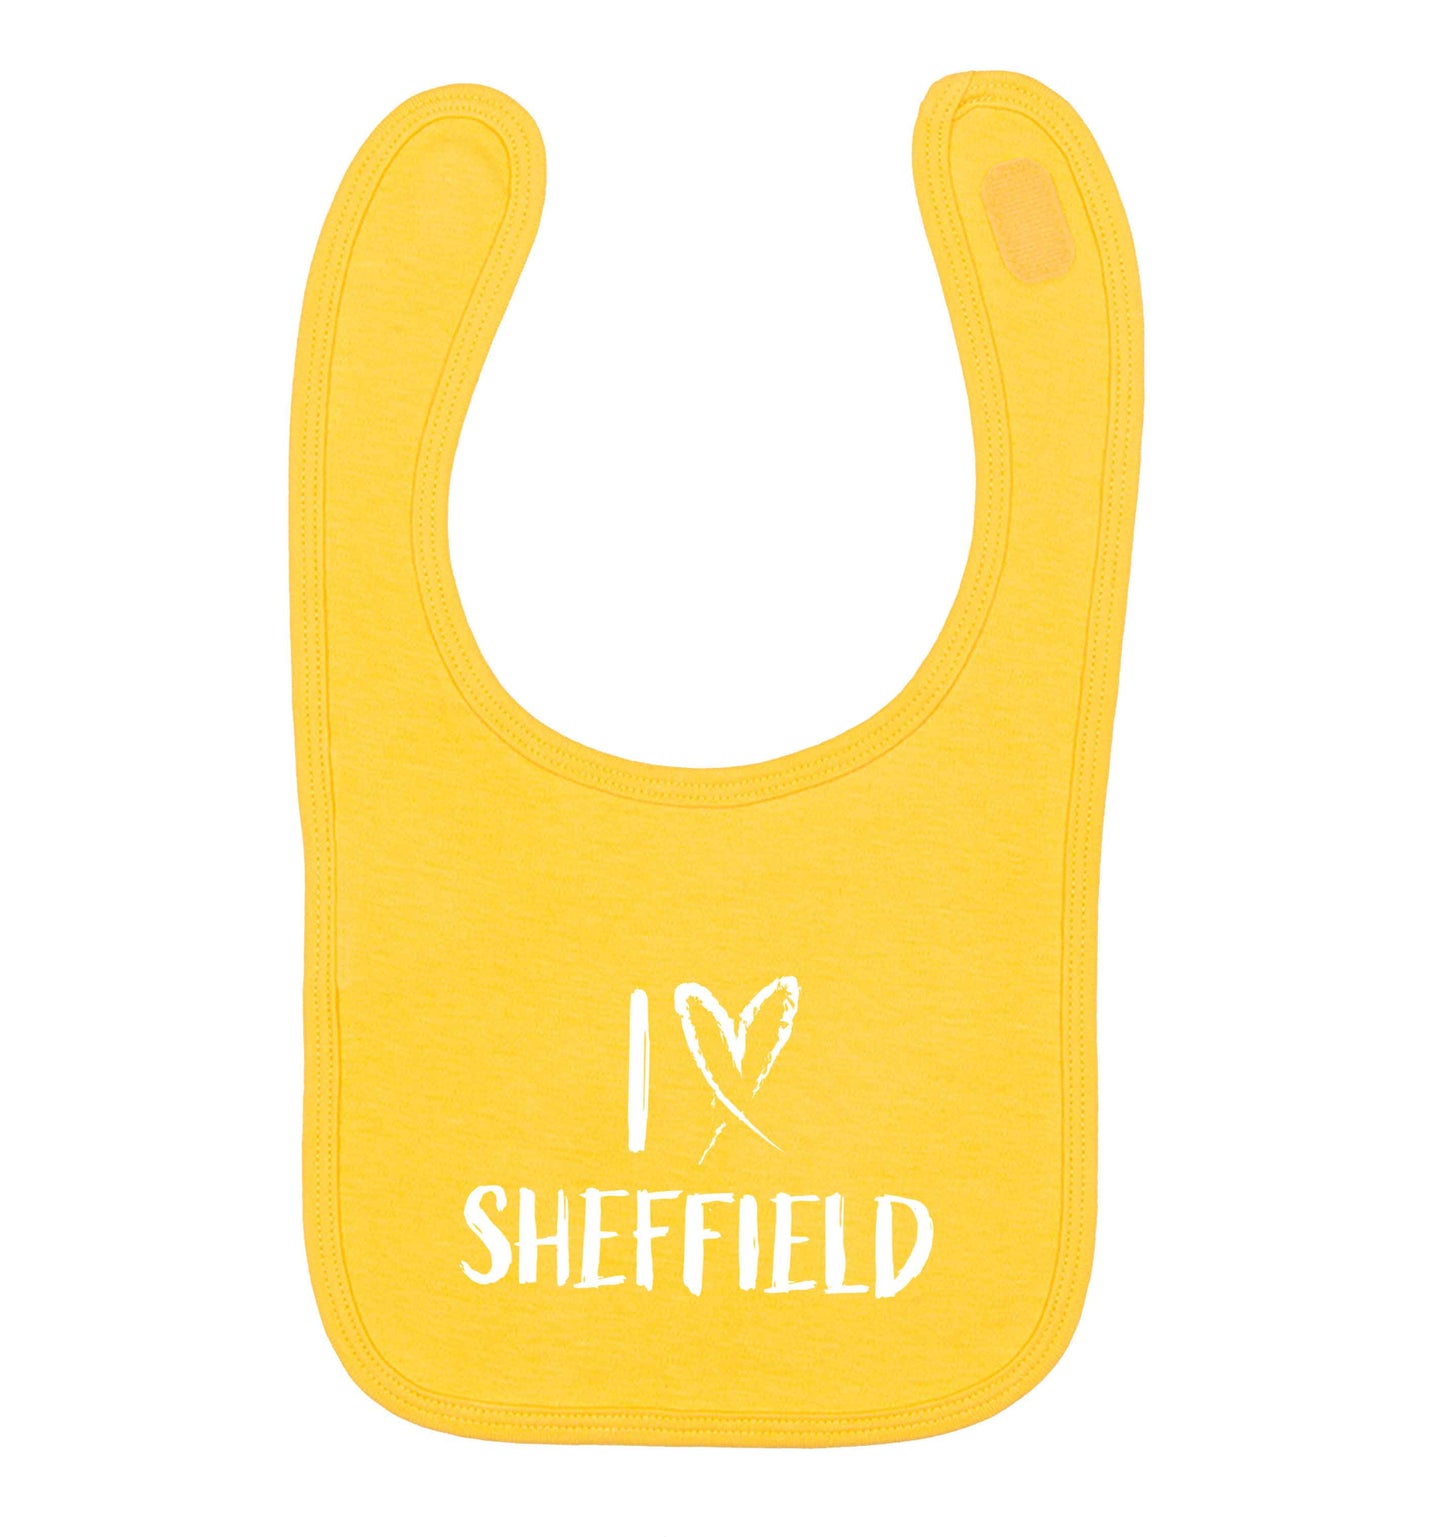 I love Sheffield yellow baby bib